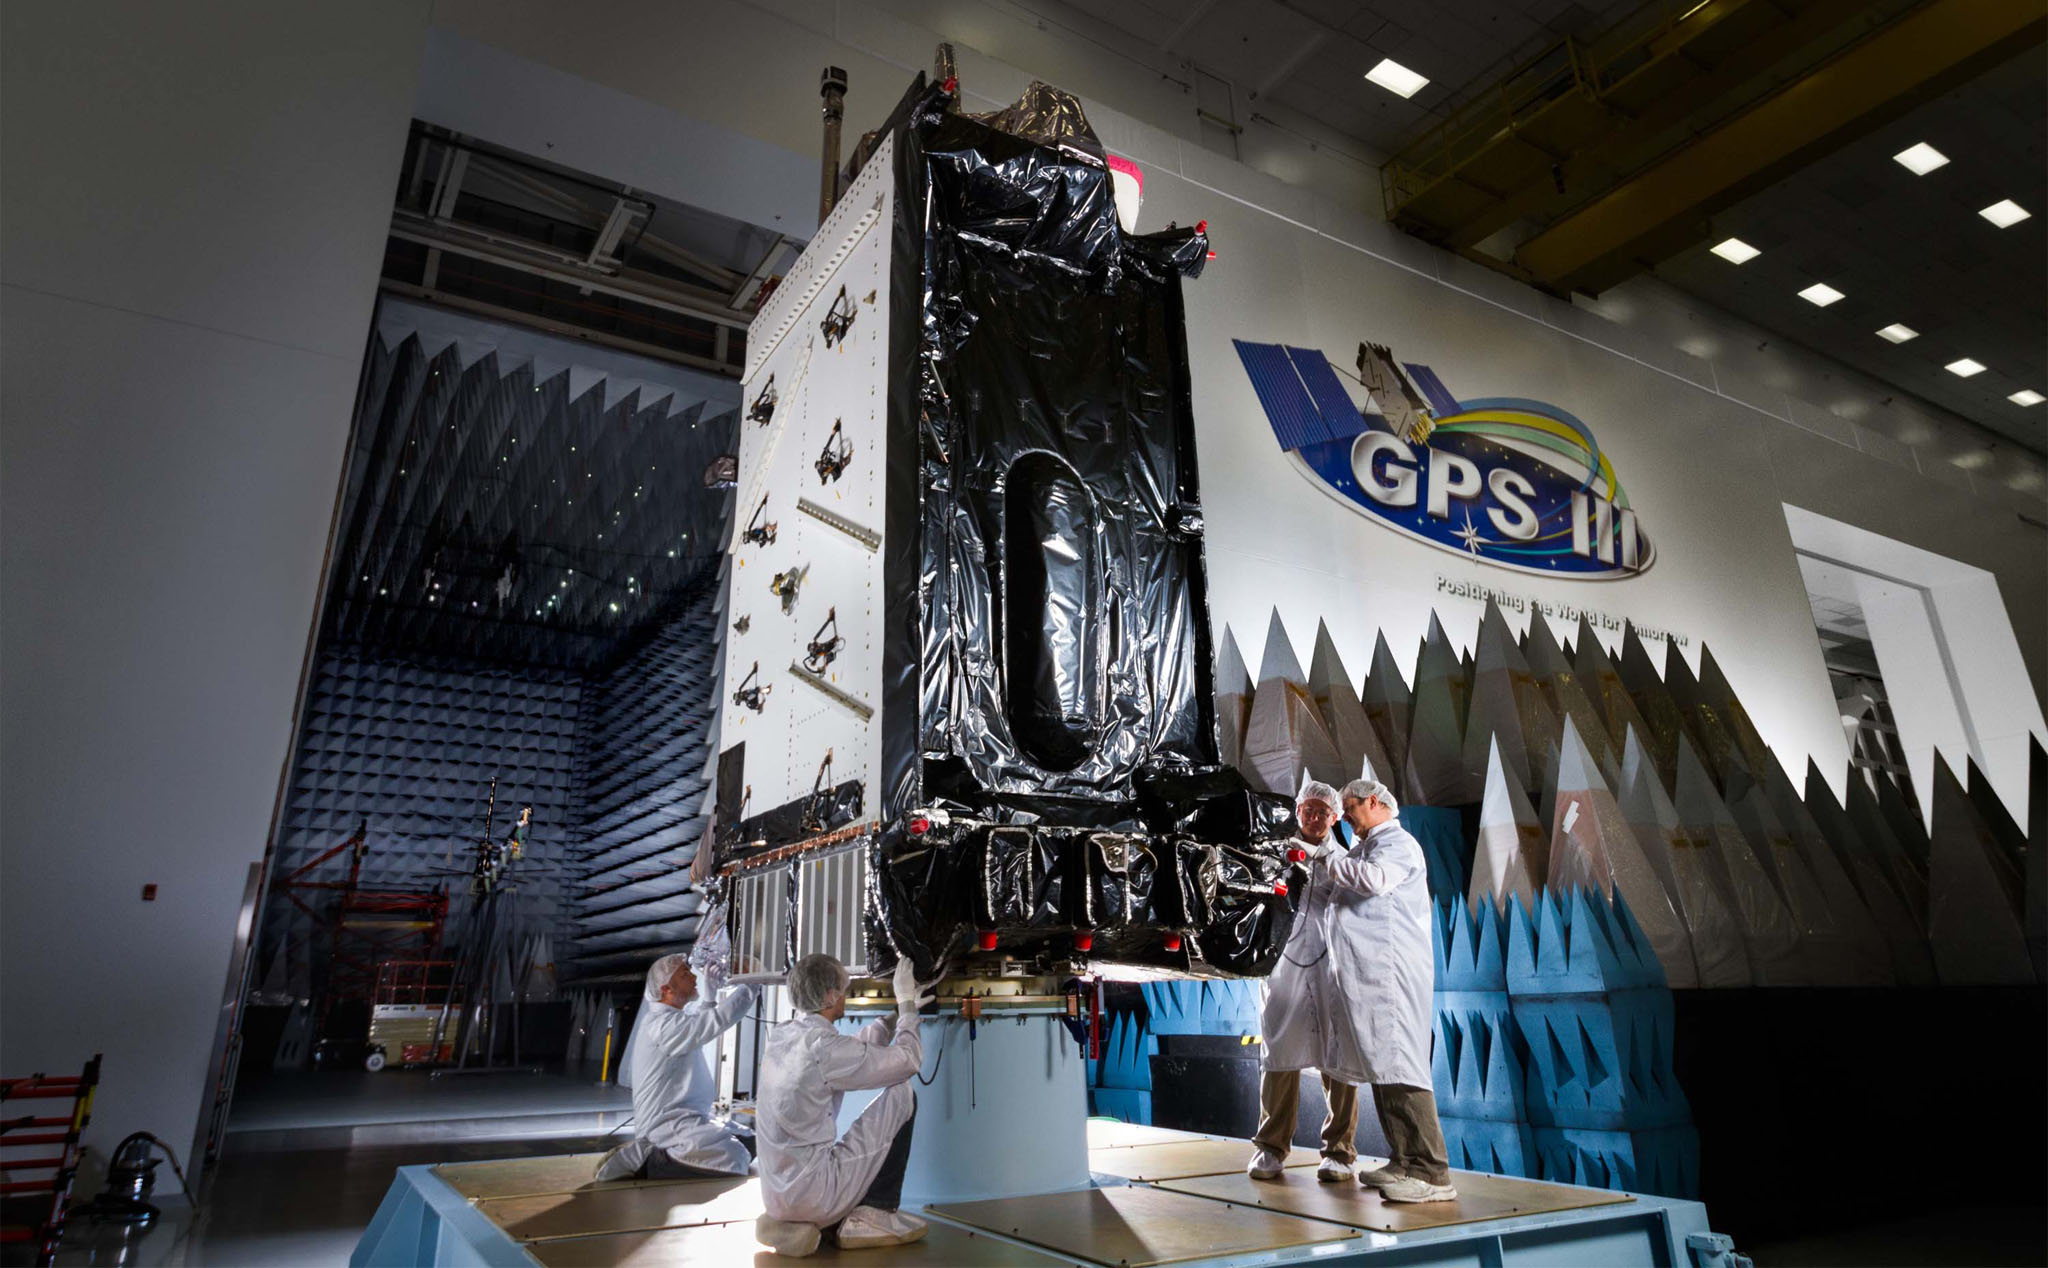 Chuẩn GPS III đang được phát triển, chính xác gấp 3 hiện tại, sẽ ra mắt vào năm 2023